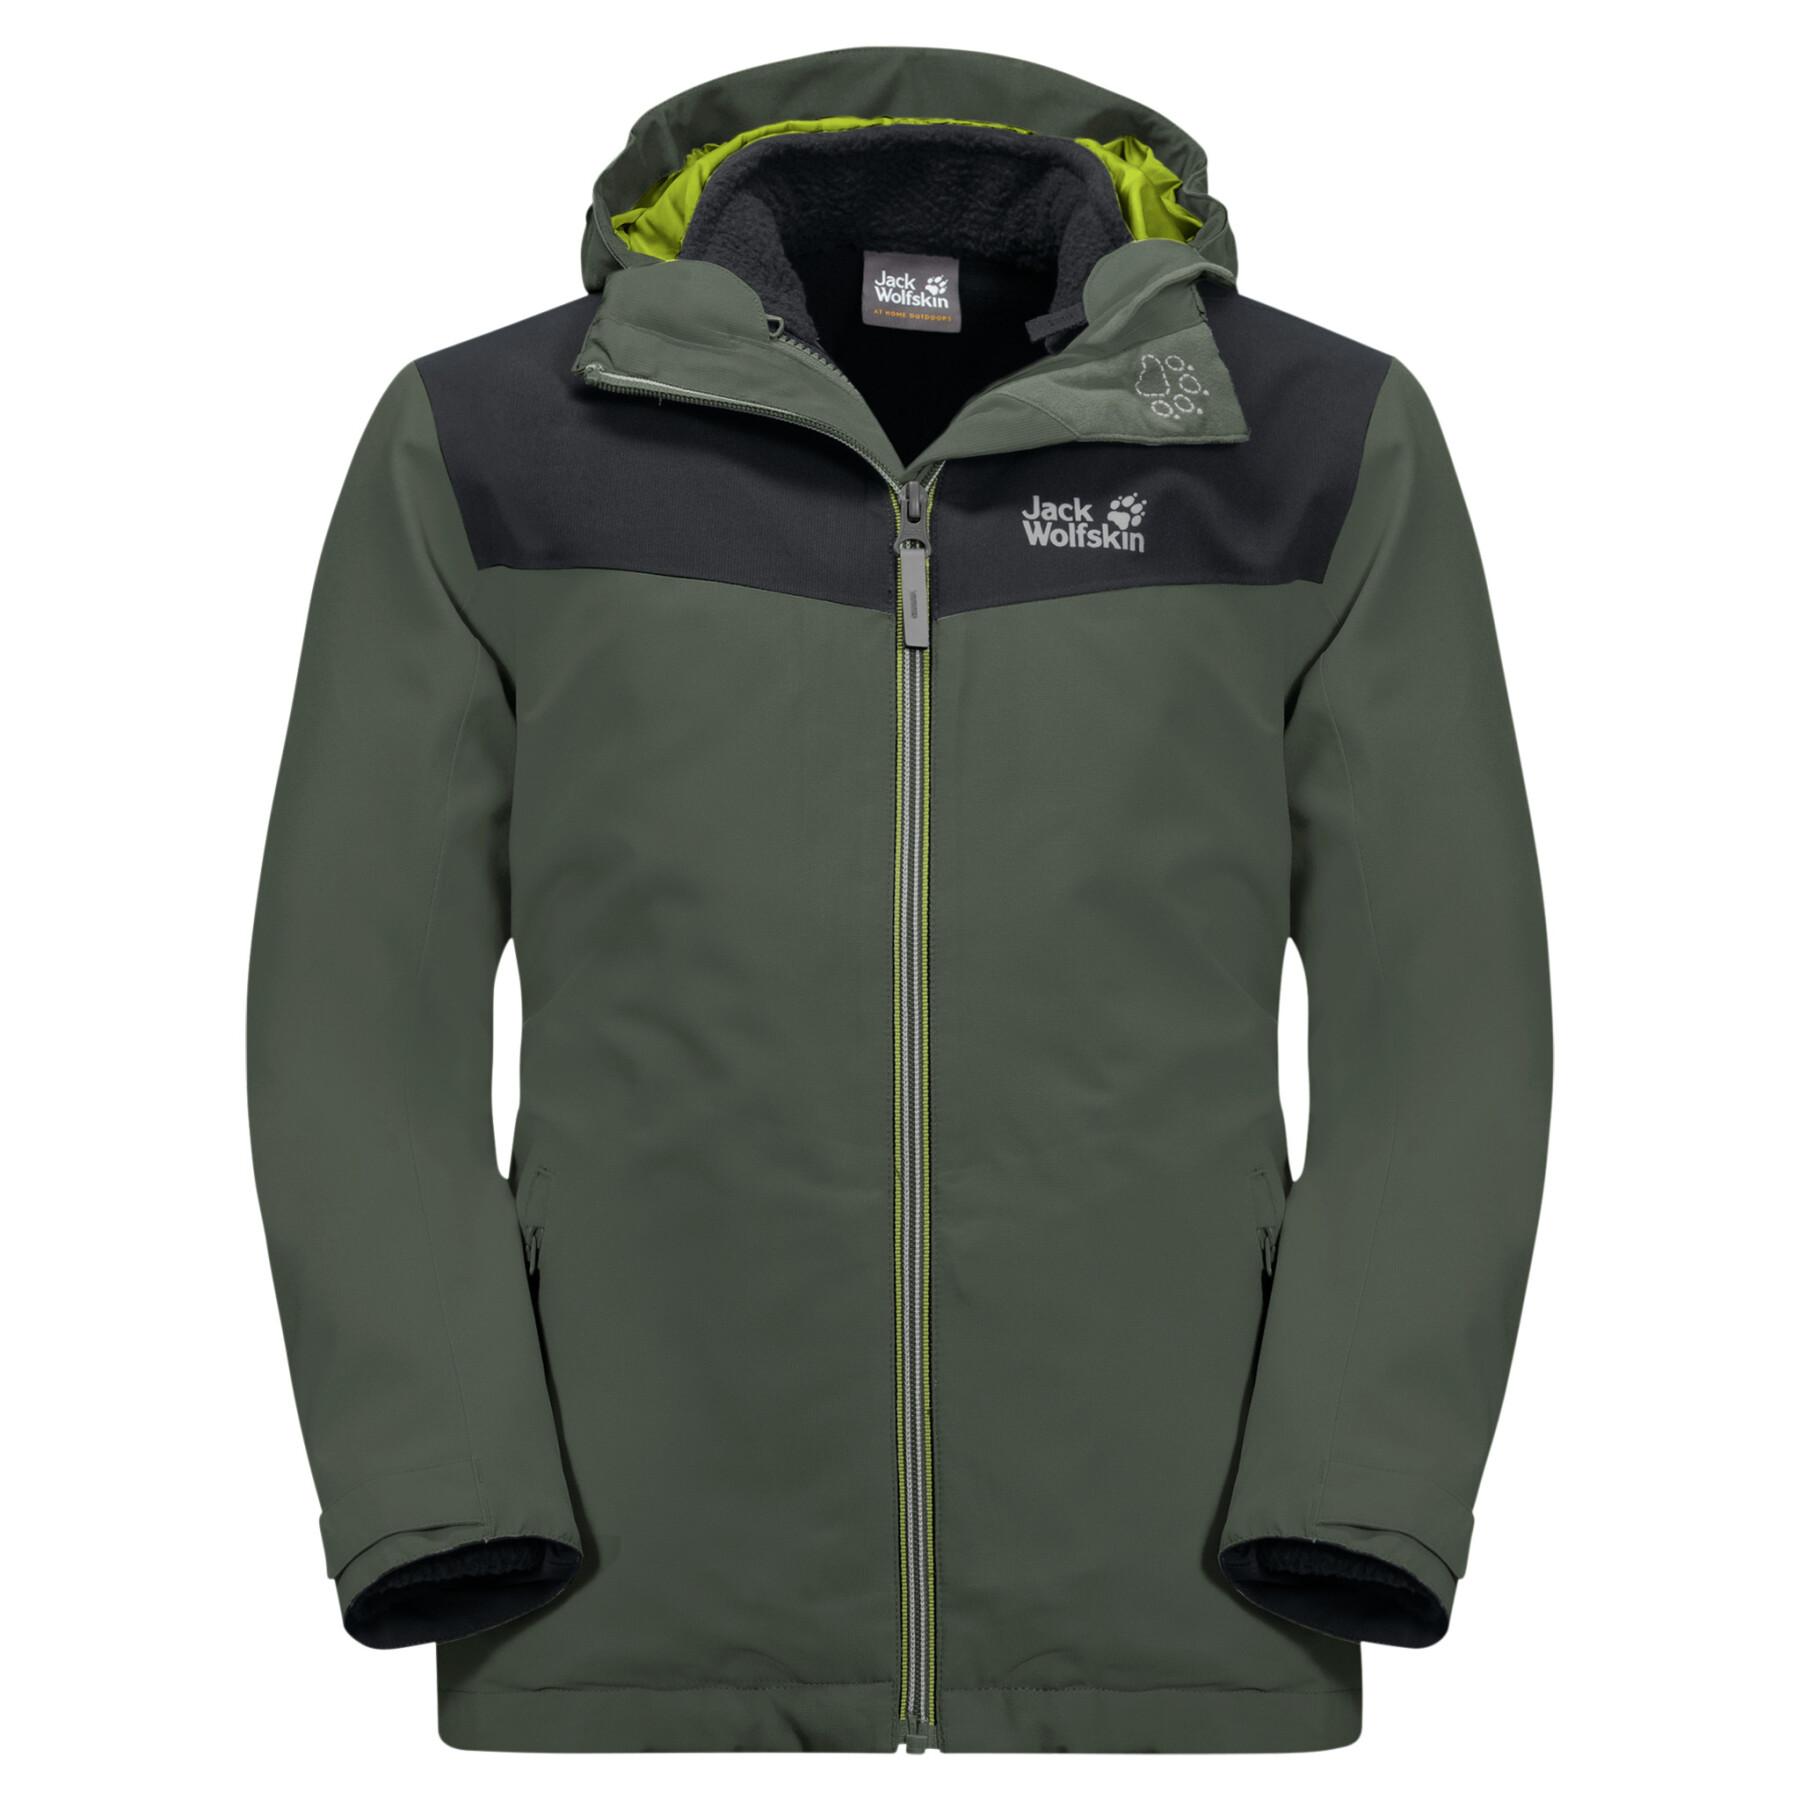 3-in-1 waterproof jacket for children Jack Wolfskin Snowfrost